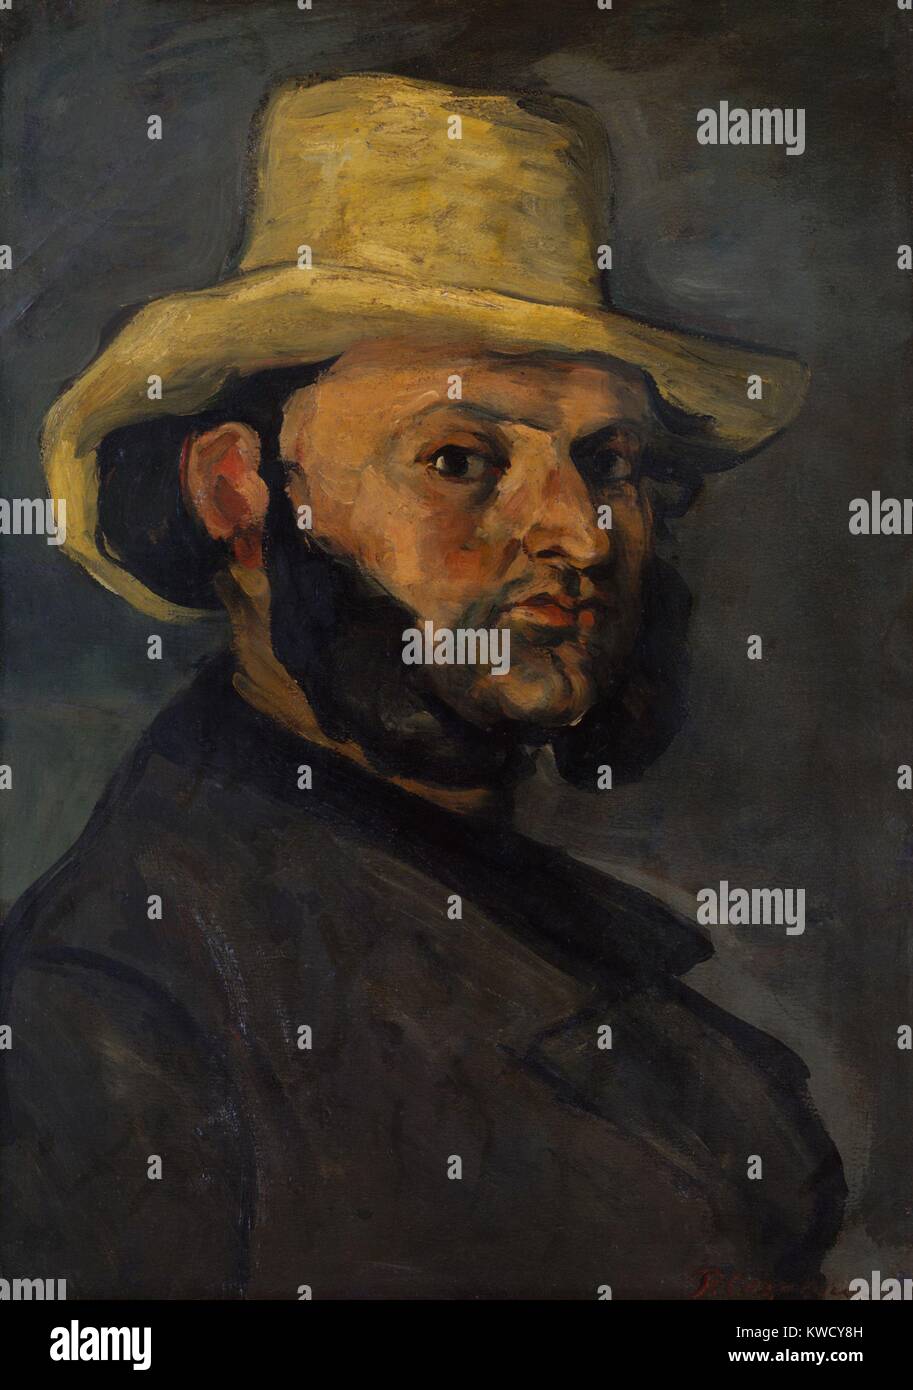 Gustave Boyer, par Paul Cézanne, 1870-1871, peinture postimpressionniste français, huile sur toile. C'est un portrait de l'ami d'enfance d'artistes, Gustave Boyer, un avocat (BSLOC 2017 5 15) Banque D'Images